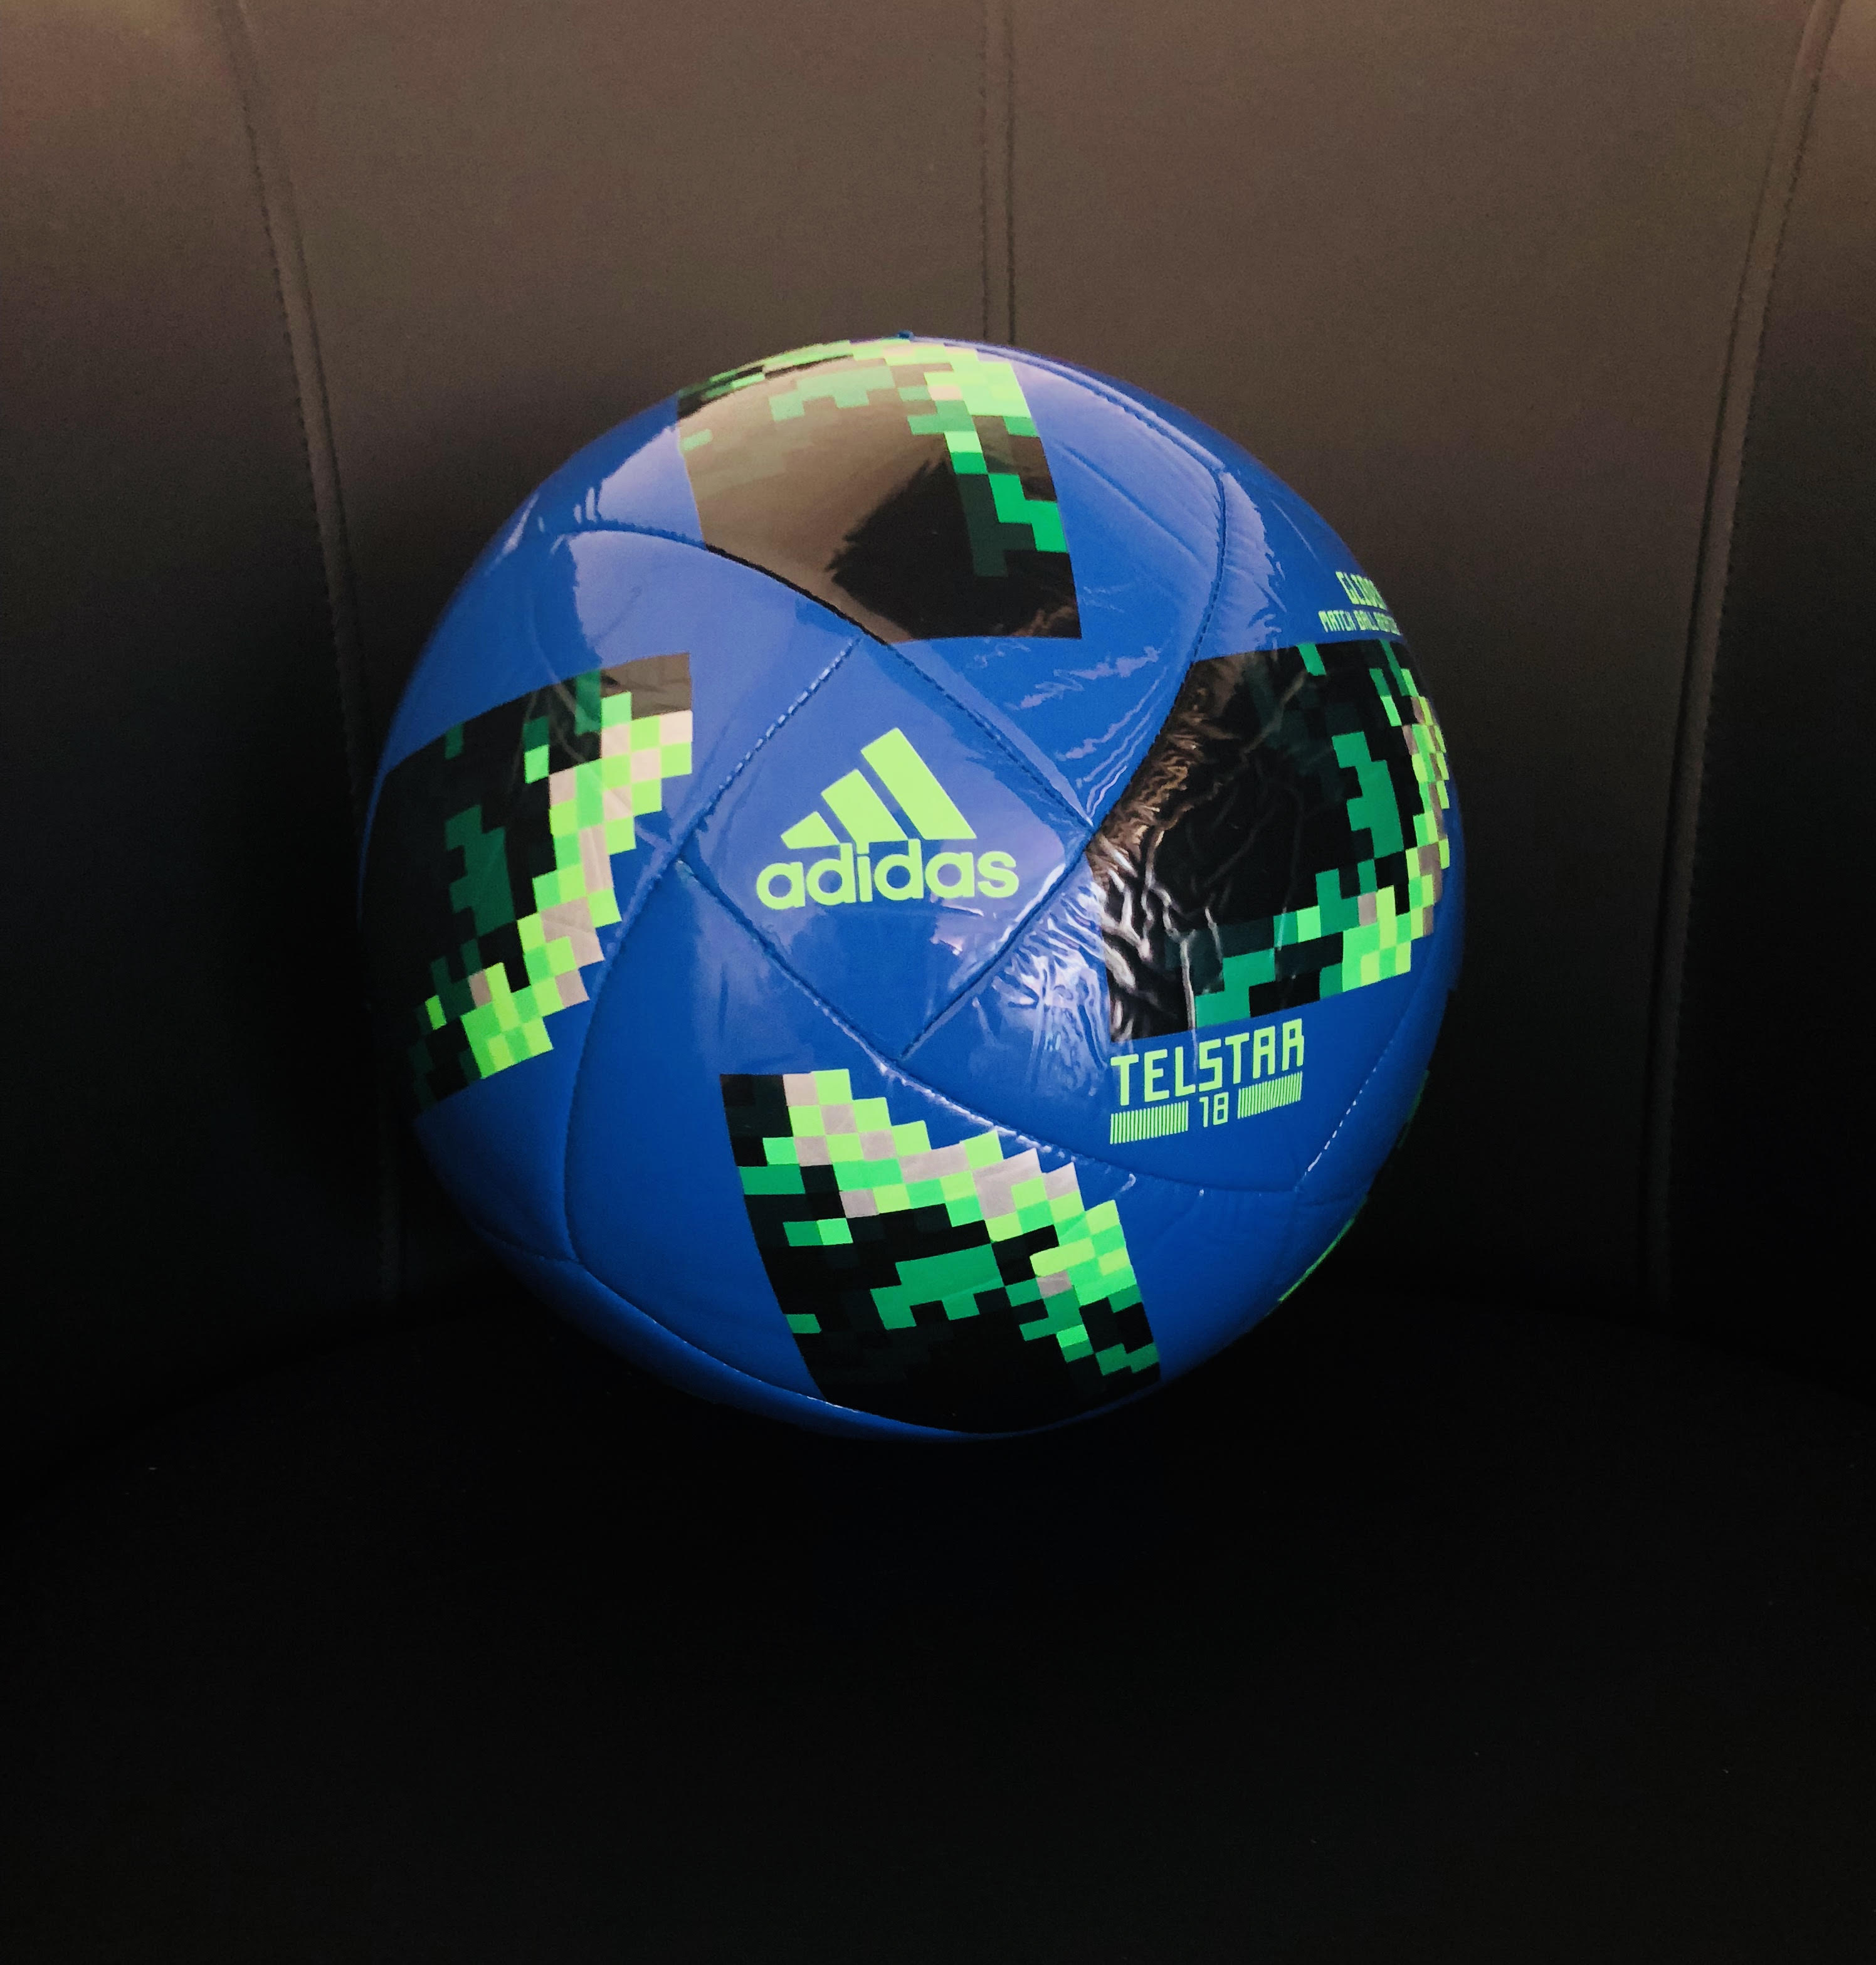 Ballon de la coupe du monde 2018 - Russie